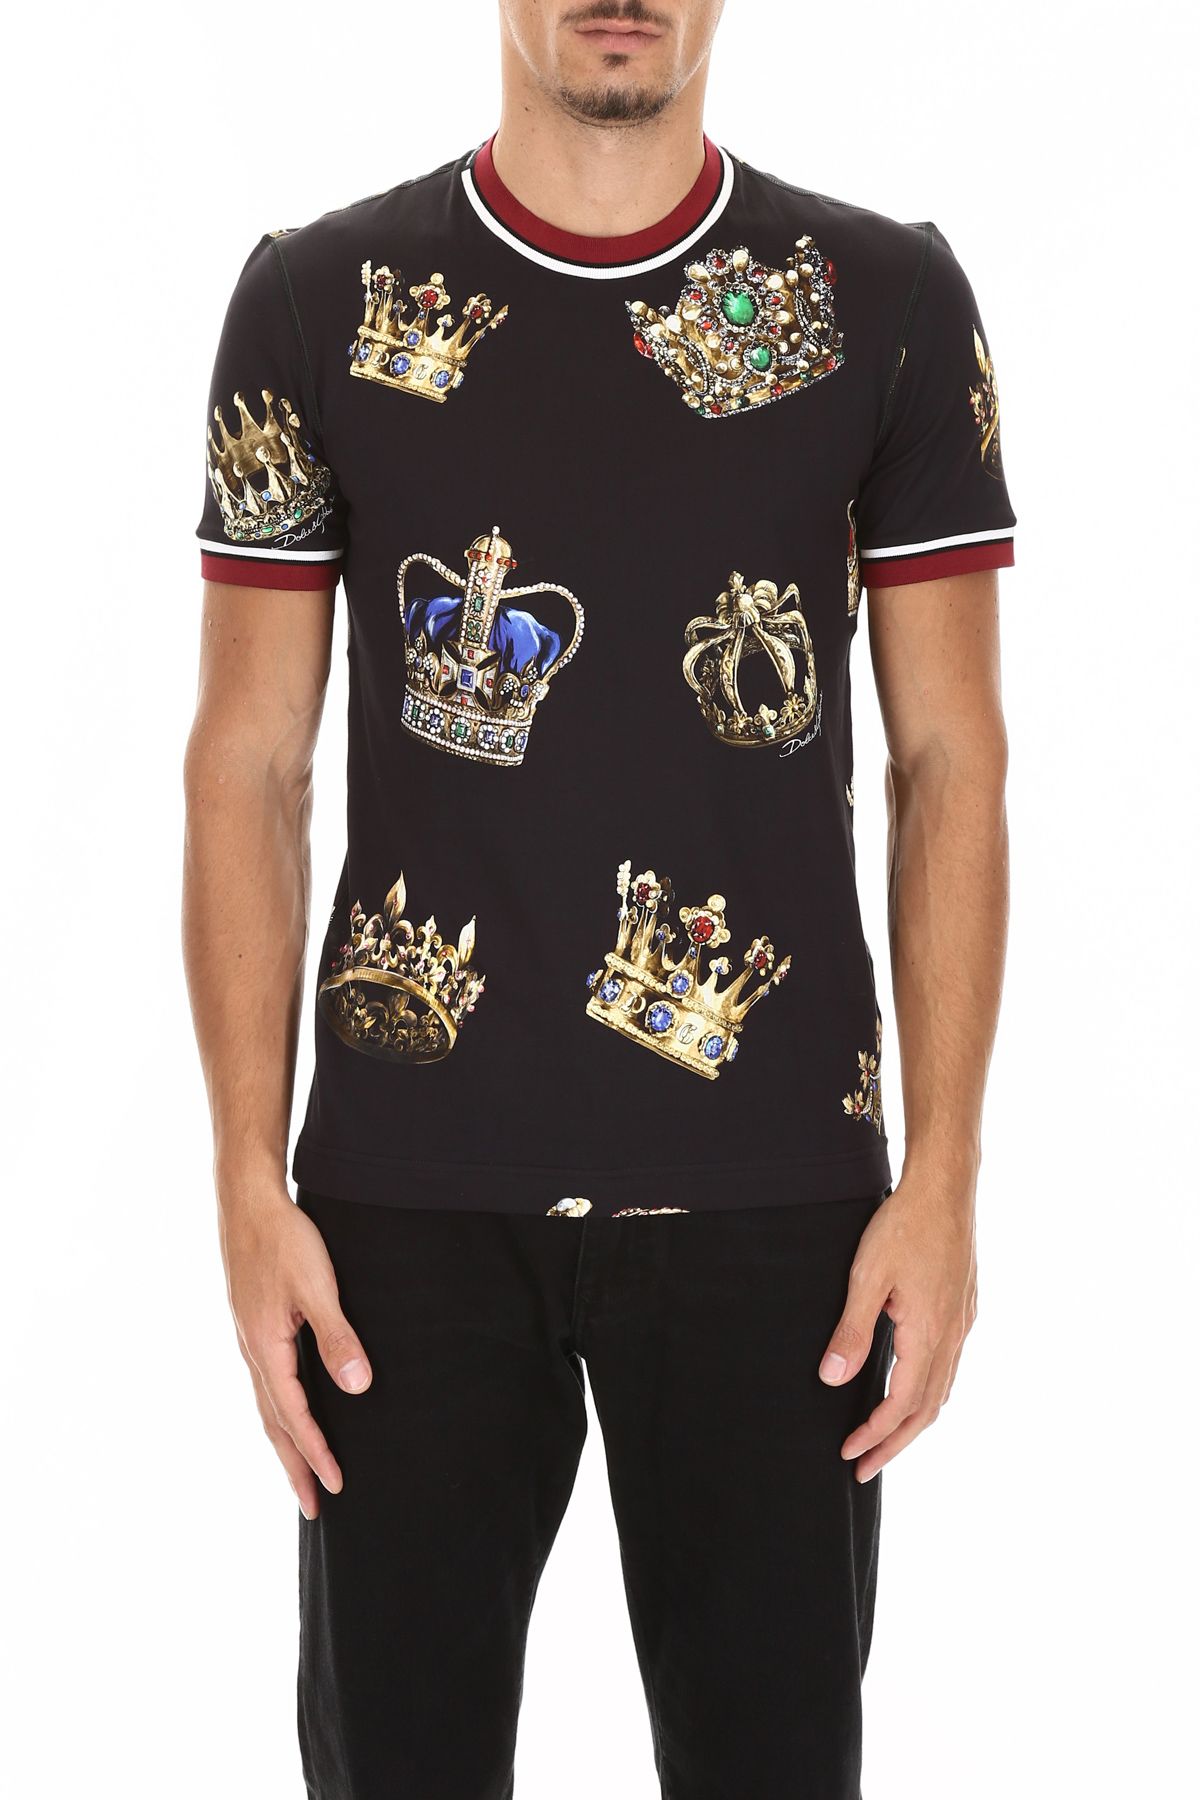 Dolce & Gabbana Dolce & Gabbana T-shirt With Crown Print - CORONE FDO ...